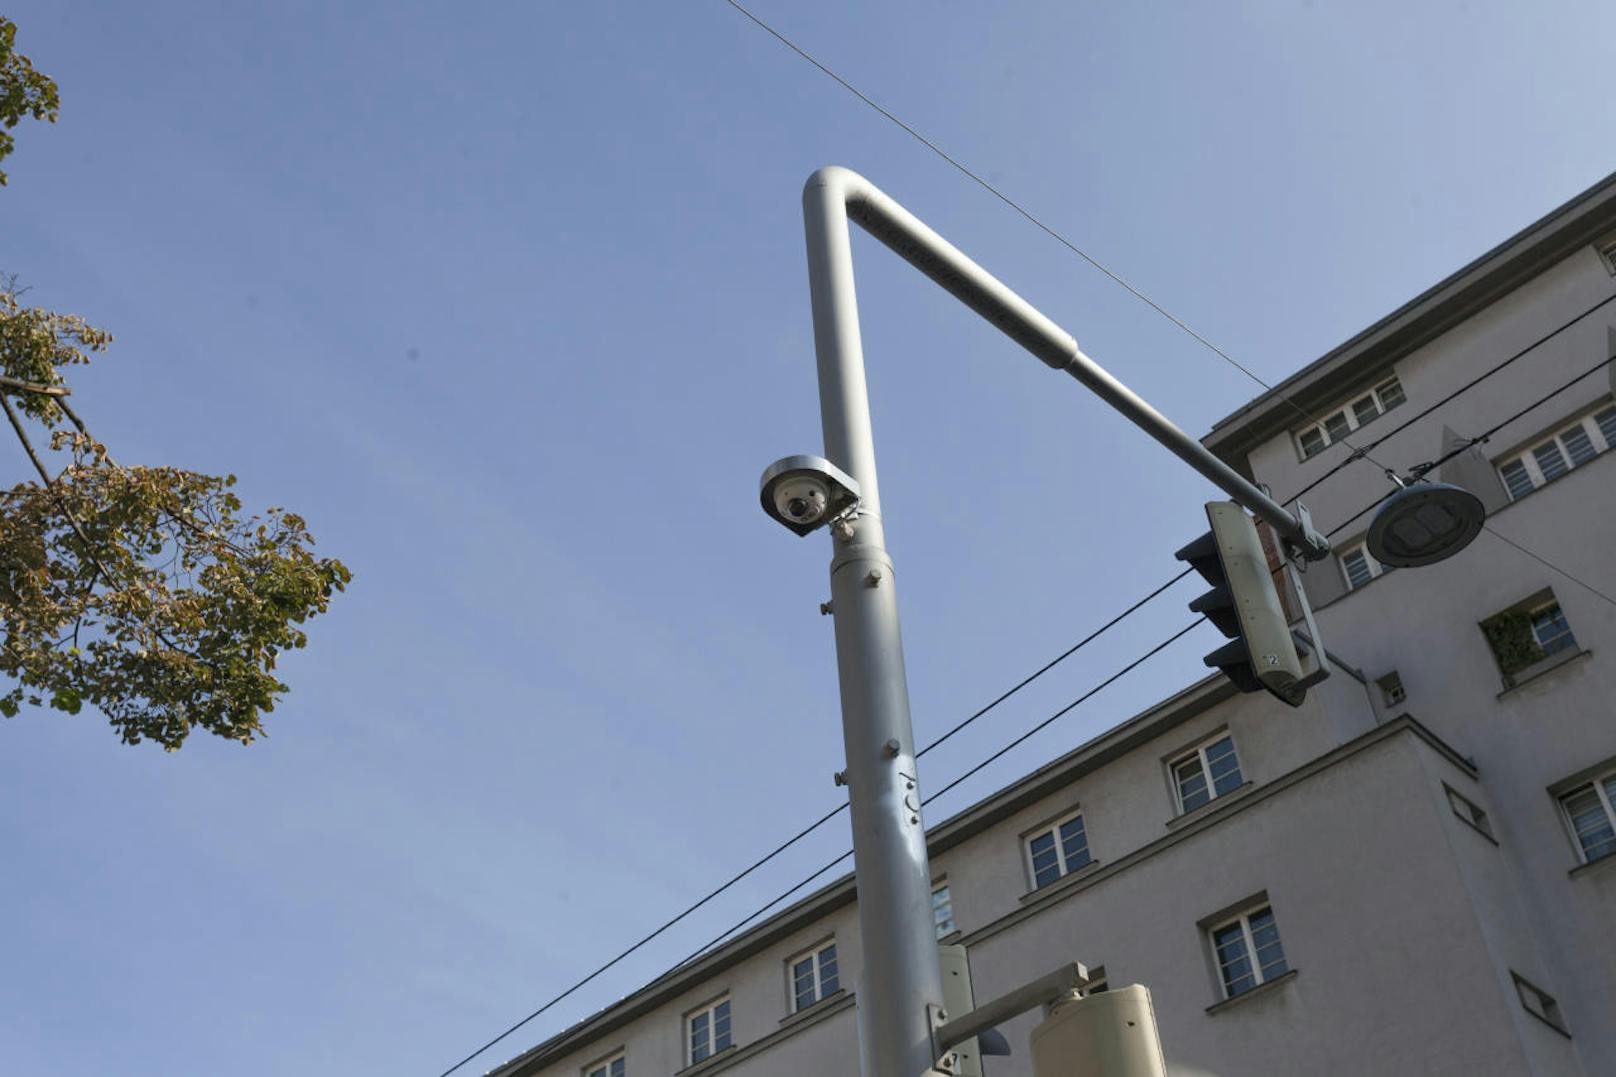 Ein Sensor auf rund vier Meter Höhe erkennt Fußgänger, eine passende Software berechnet, ob diese nur vorbeigehen oder die Straße überqueren wollen. In diesem Falle schaltet die neue intelligente Ampel automatisch auf Grün.